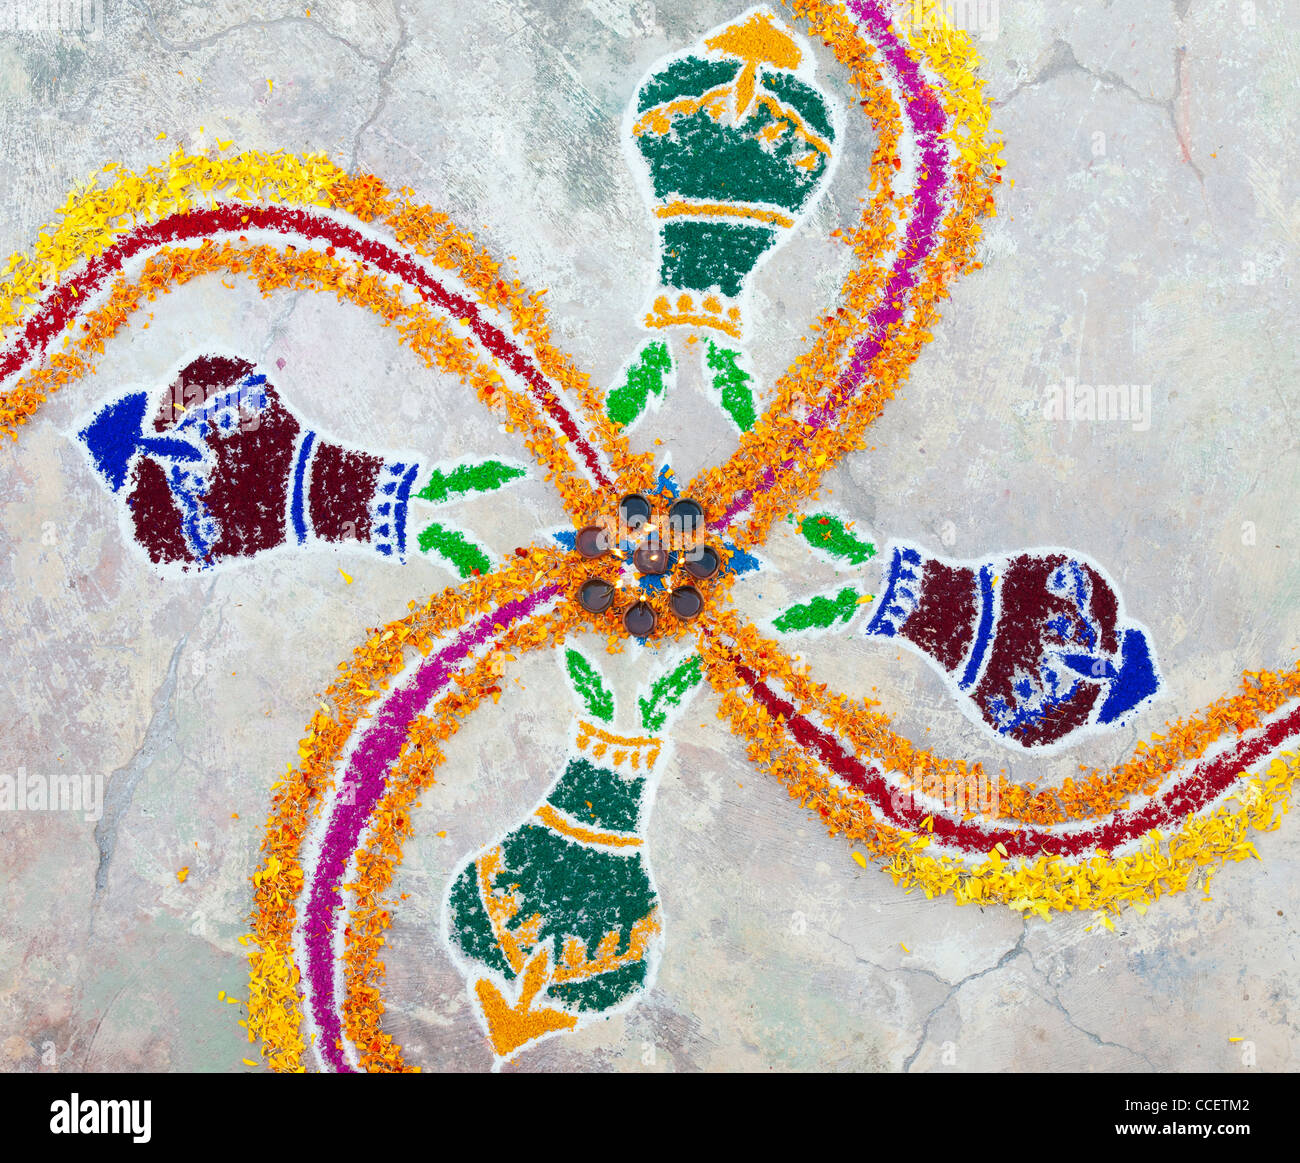 Festival indien Rangoli sankranti design poudre de couleur et de pétales de fleurs. L'Inde Banque D'Images